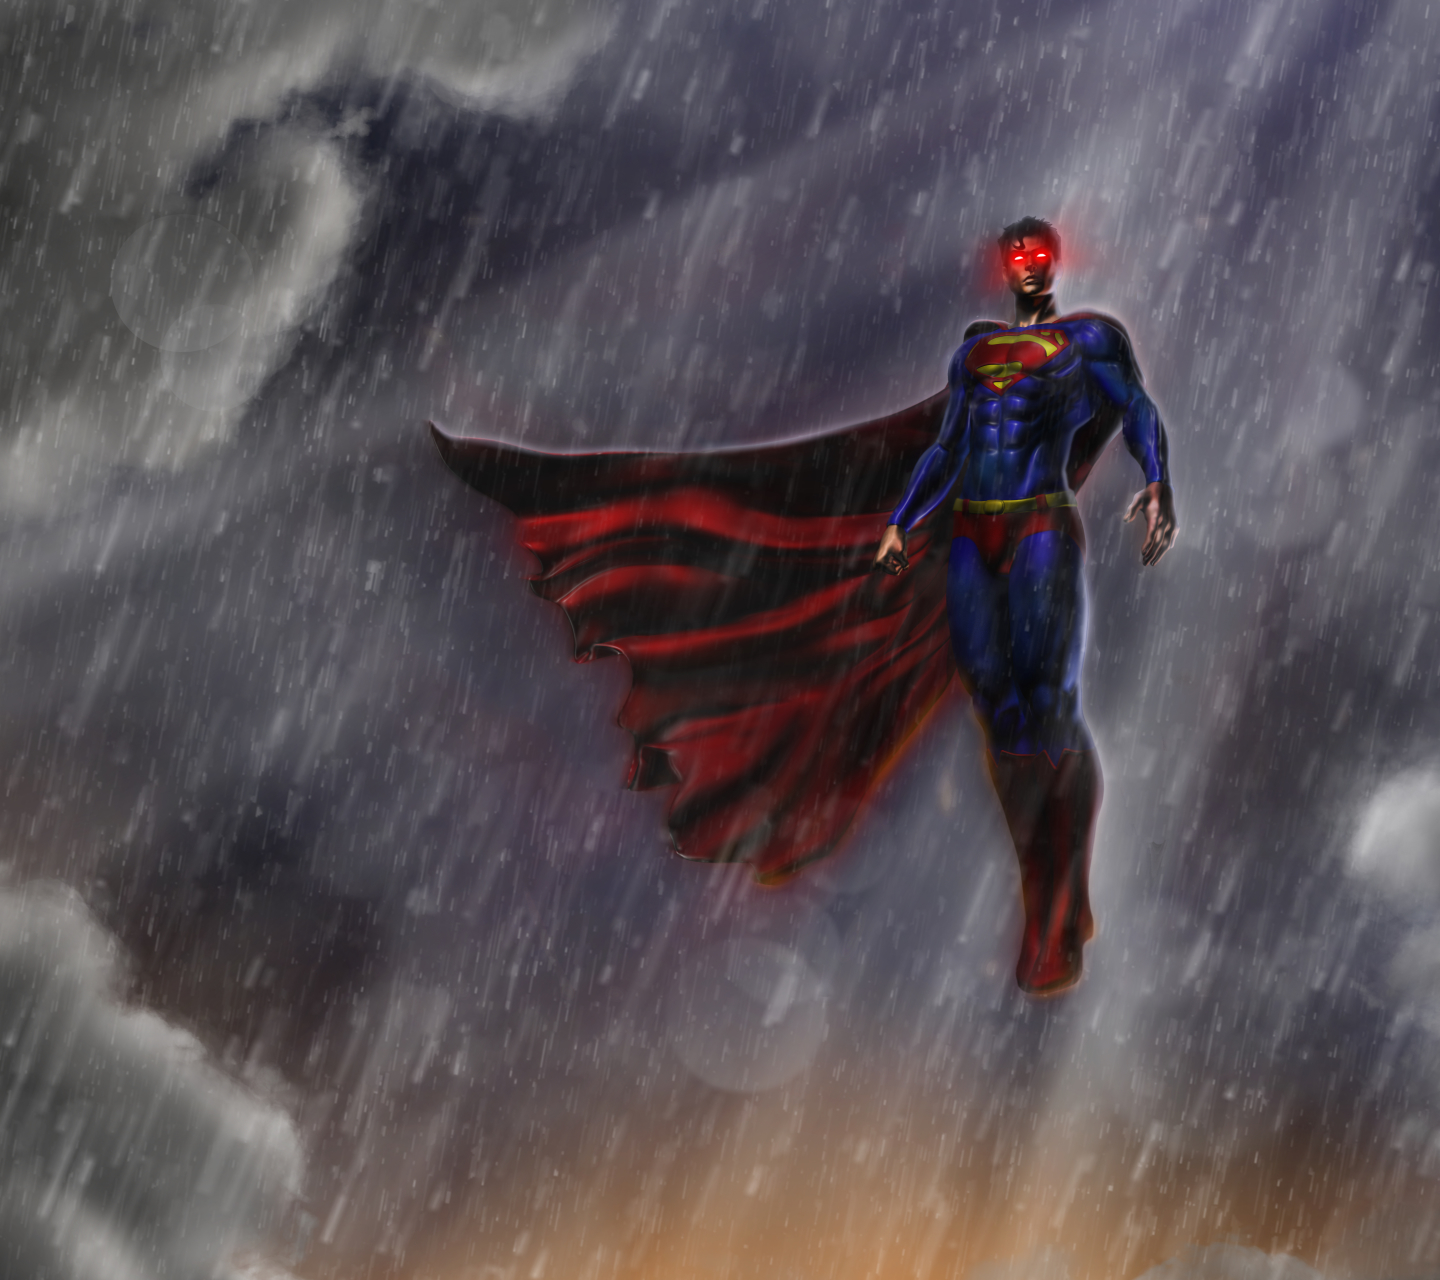 Скачать обои бесплатно Дождь, Комиксы, Супергерой, Супермен, Логотип Супермена картинка на рабочий стол ПК